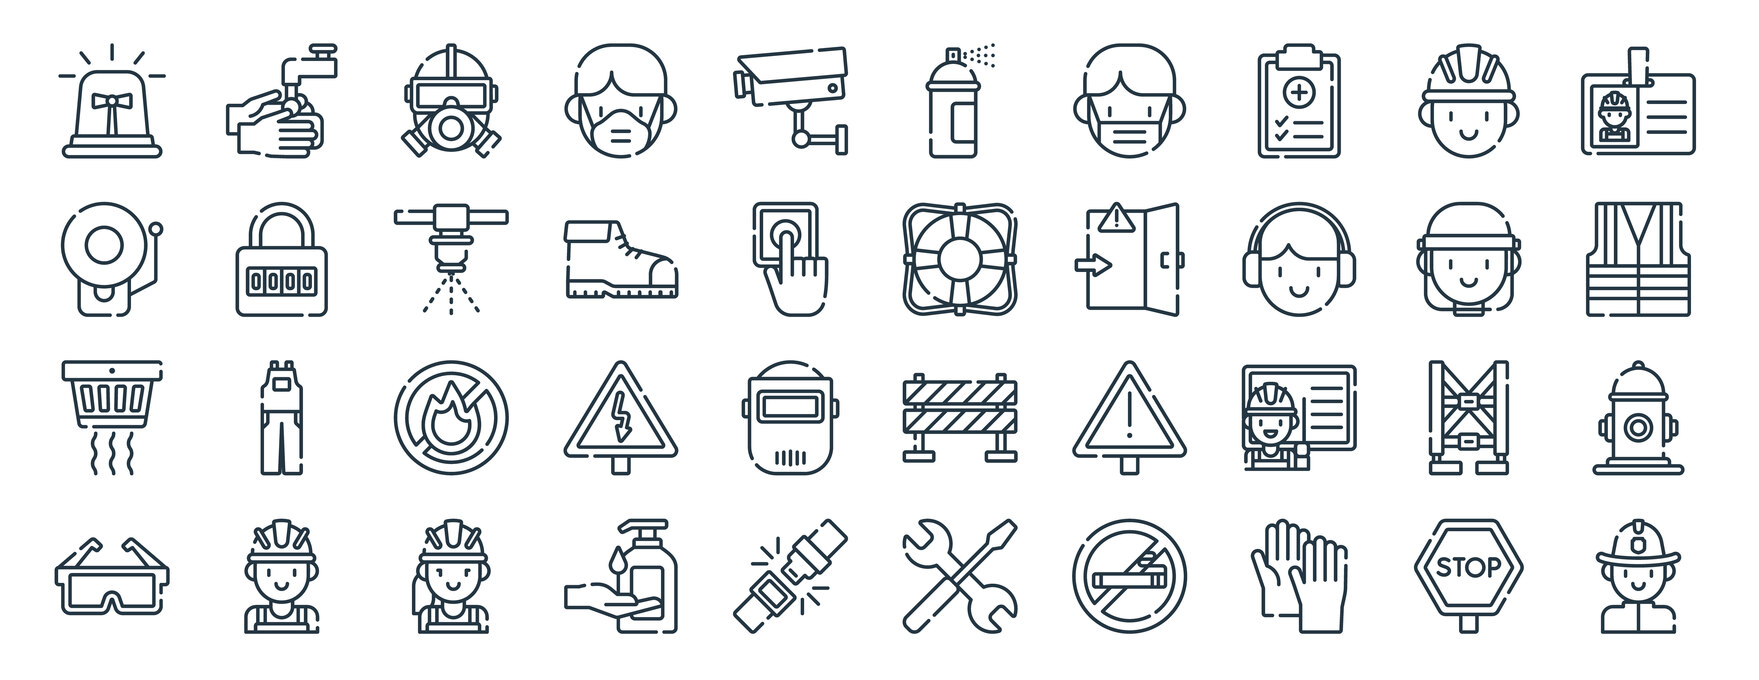 Verschiedene Icons zum Thema Schutz und Schutzausrüstung